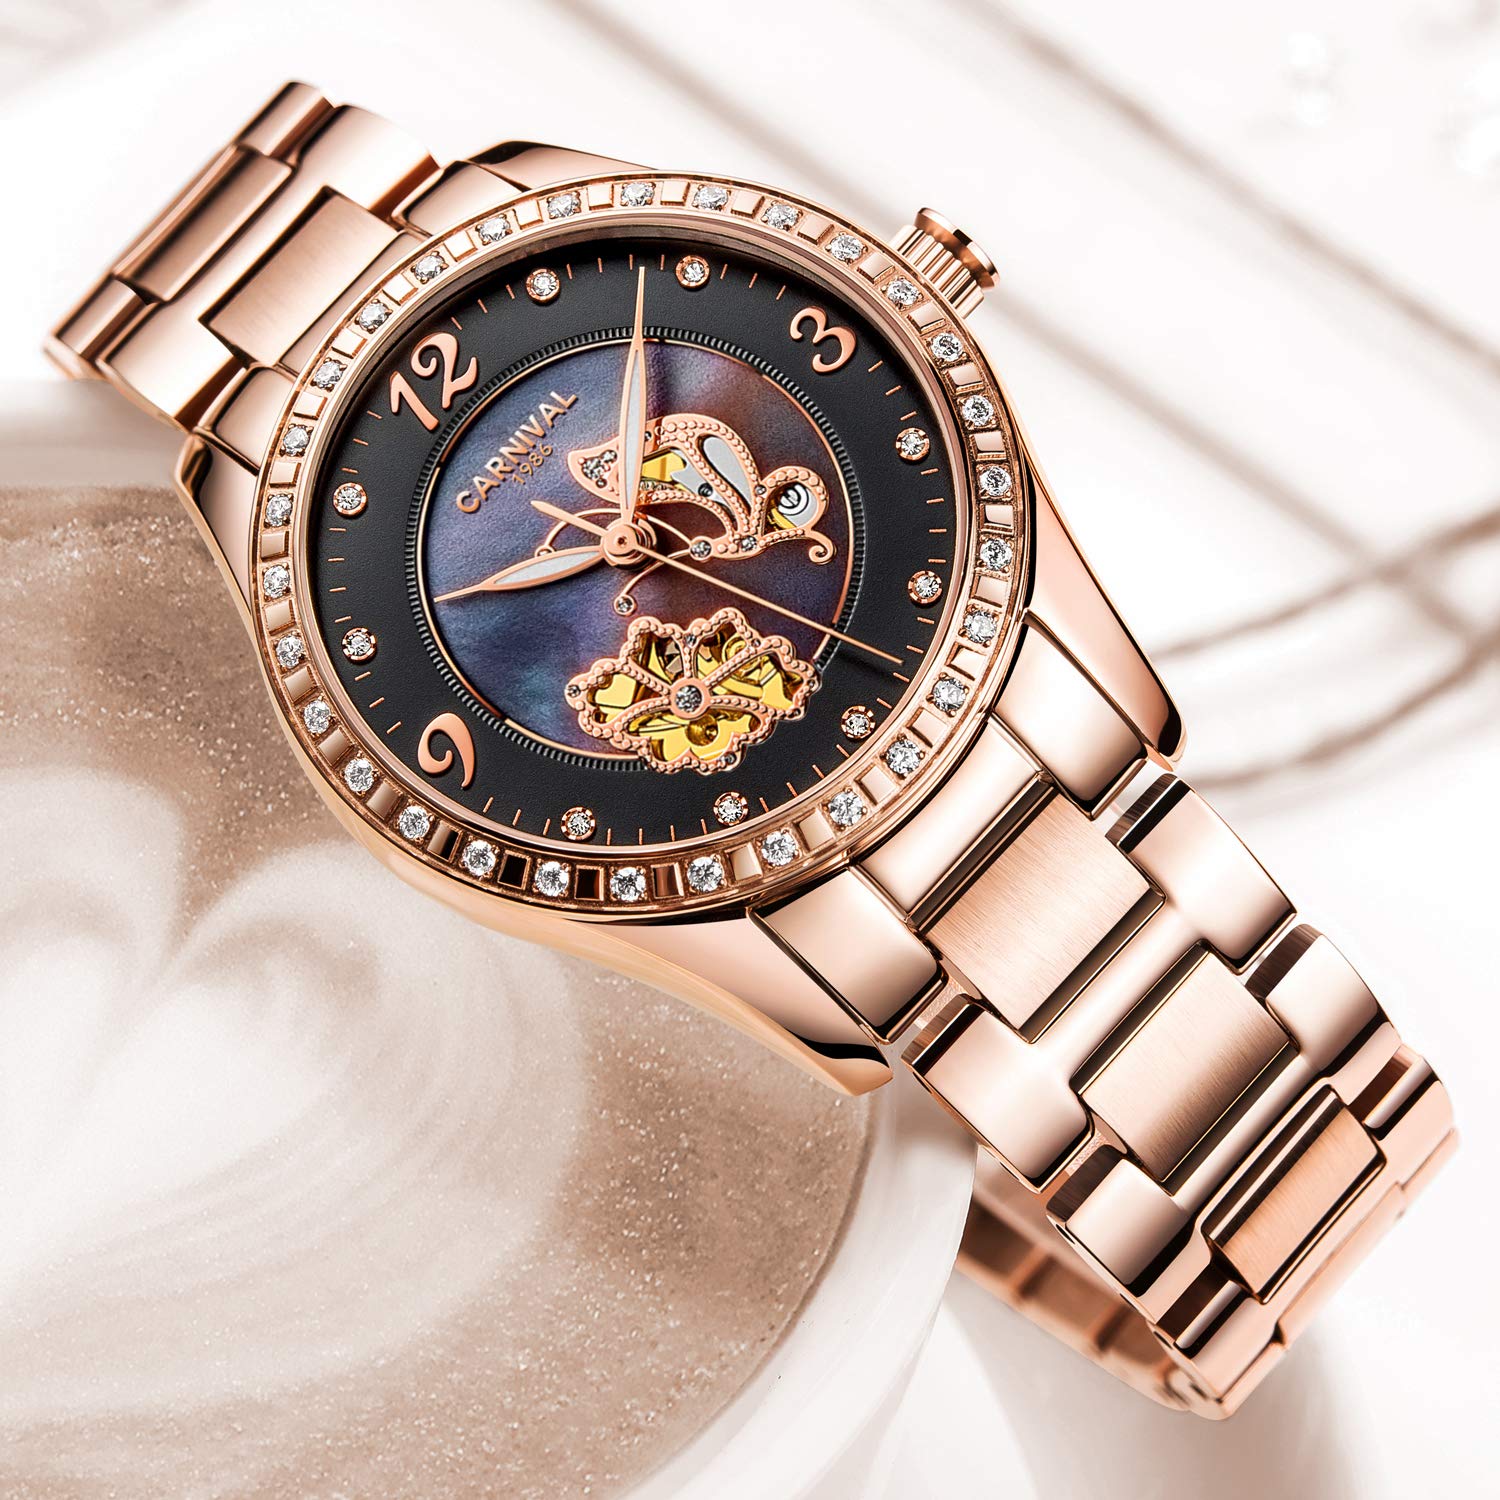 （Carnivalカーニバル）腕時計 自動巻き 機械式 夜光 ダイヤ装飾 レディース ローズゴールド ブラック